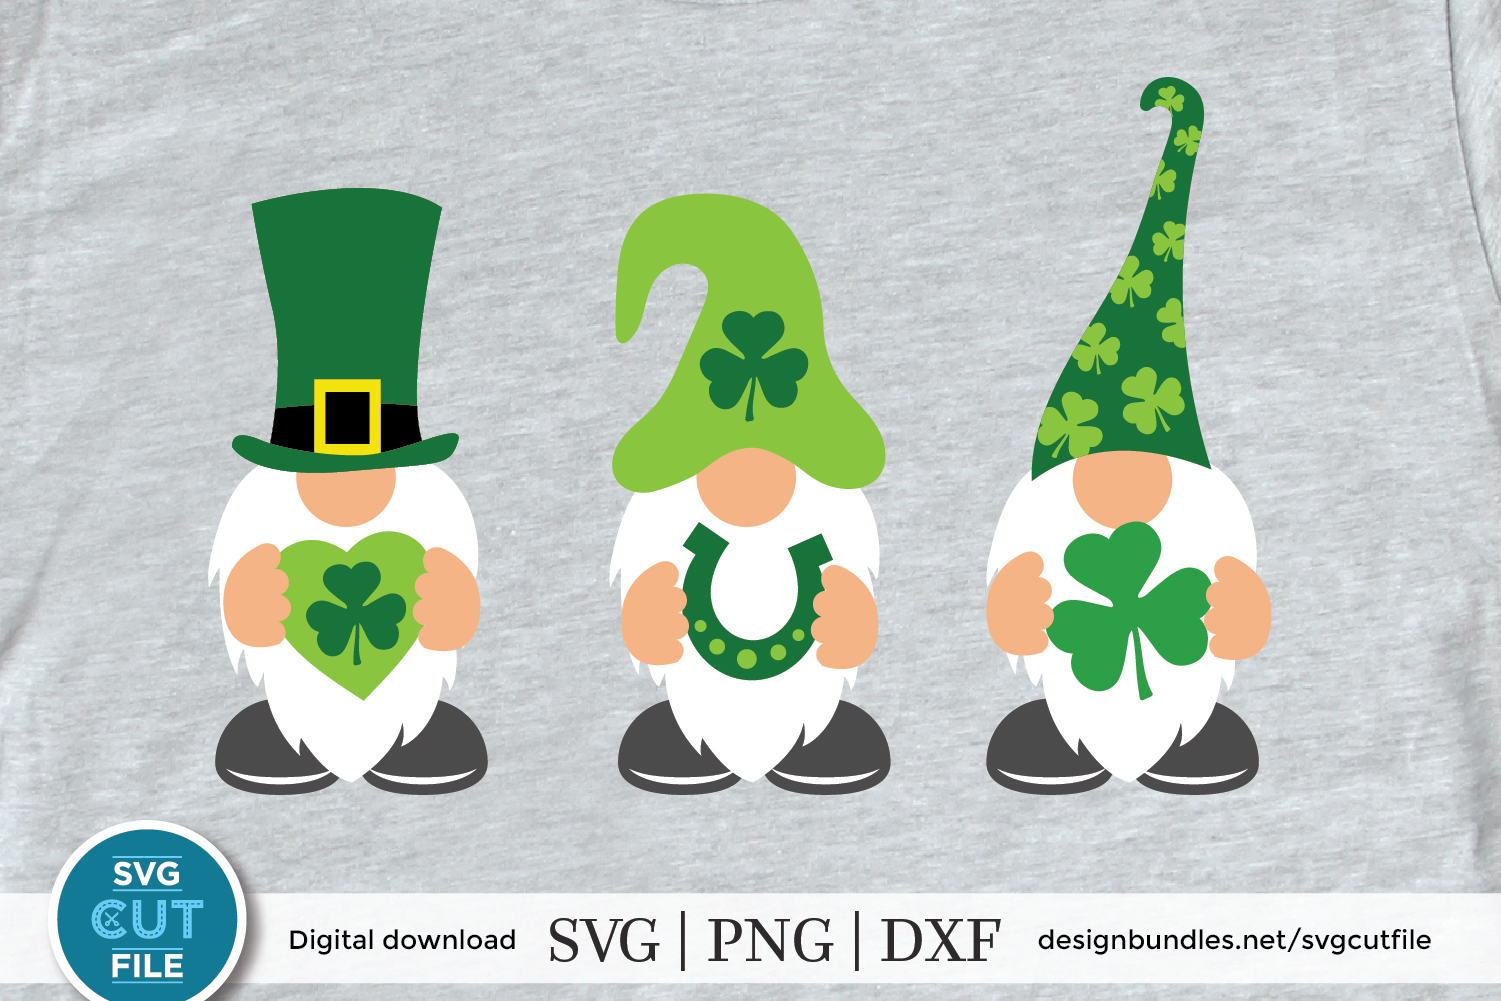 St. Pats Gnomes holding shamrock - a St. Patrick's Day svg